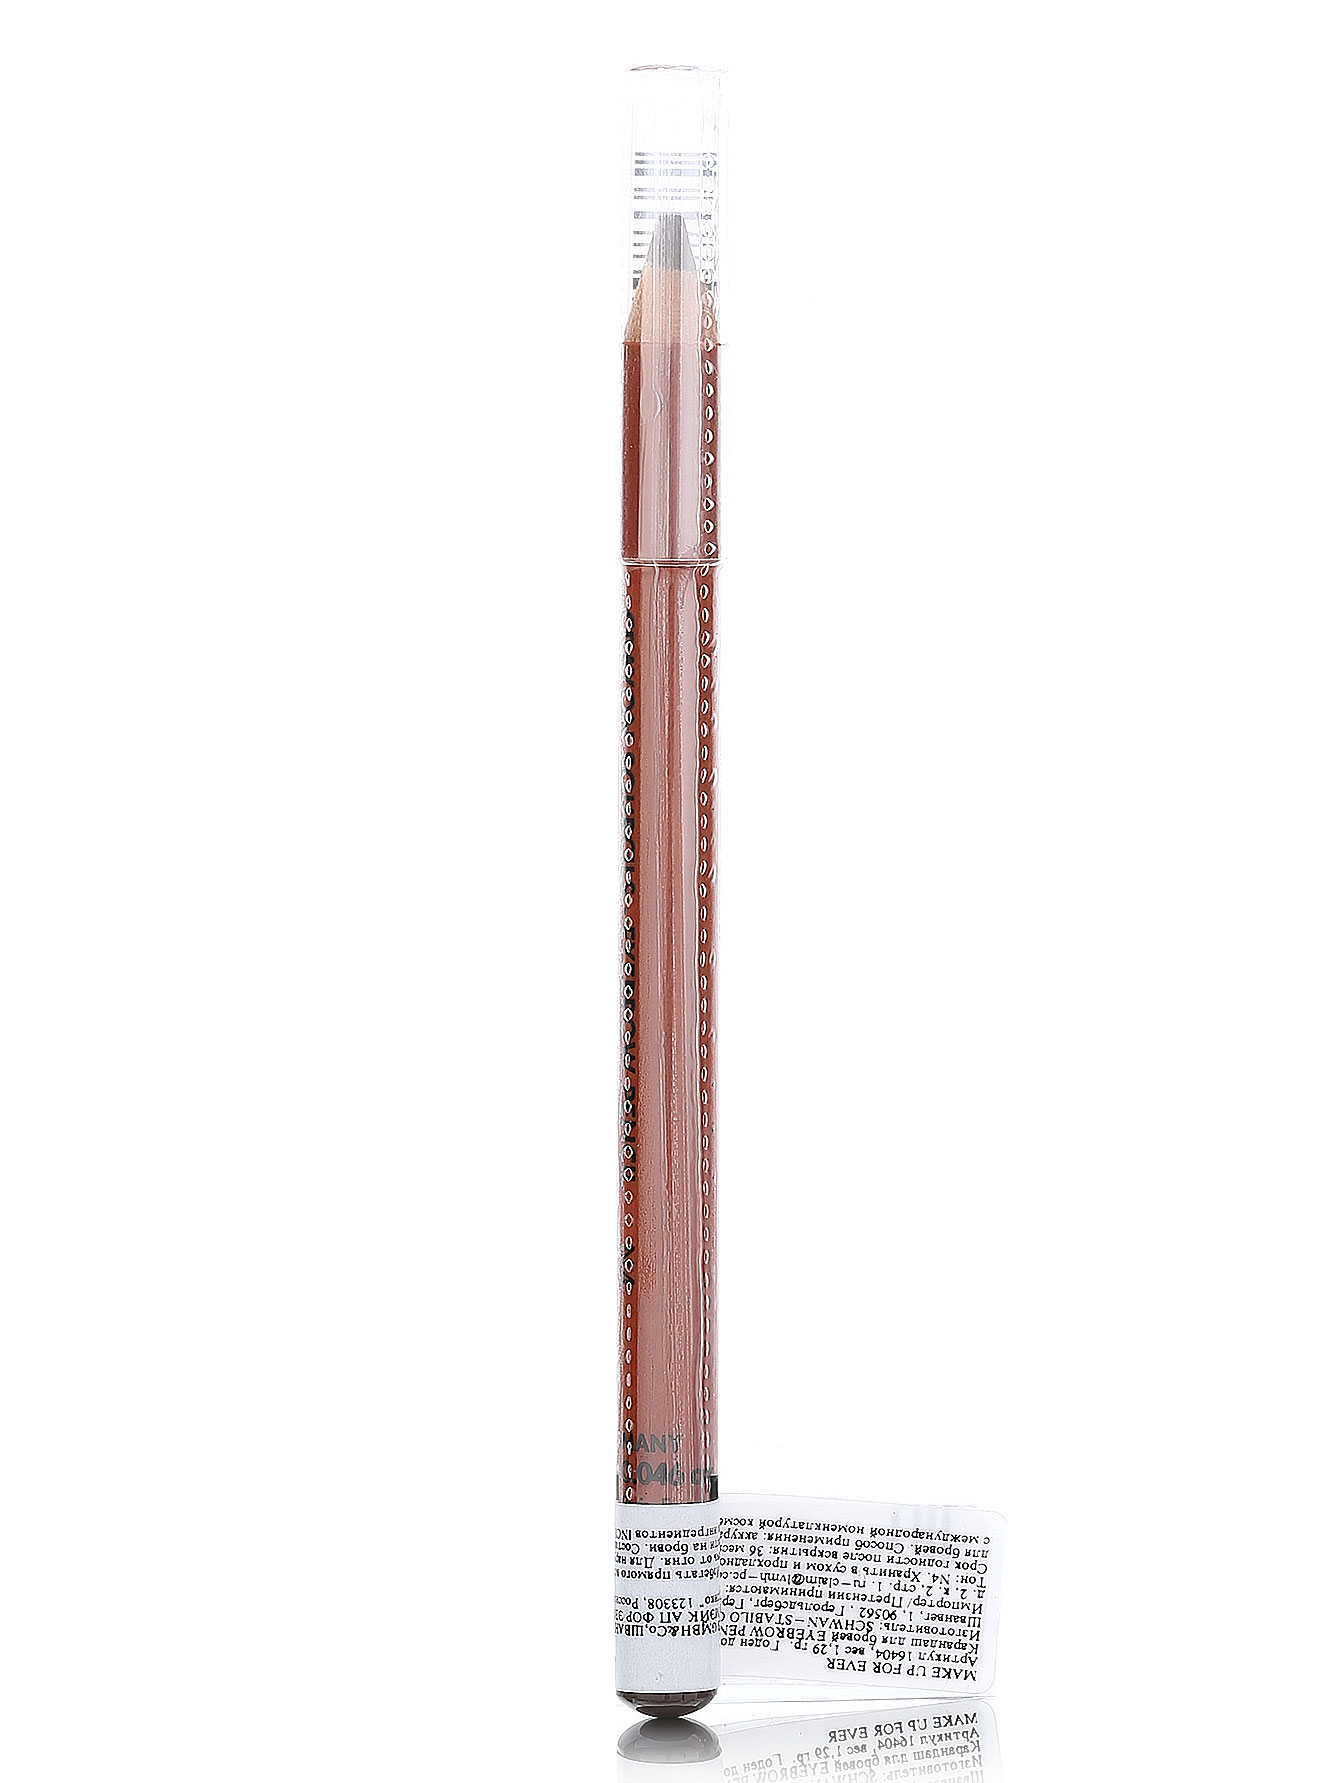  Карандаш для бровей - №4 темный серо-коричневый, Eyebrow Pencil - Модель Верх-Низ